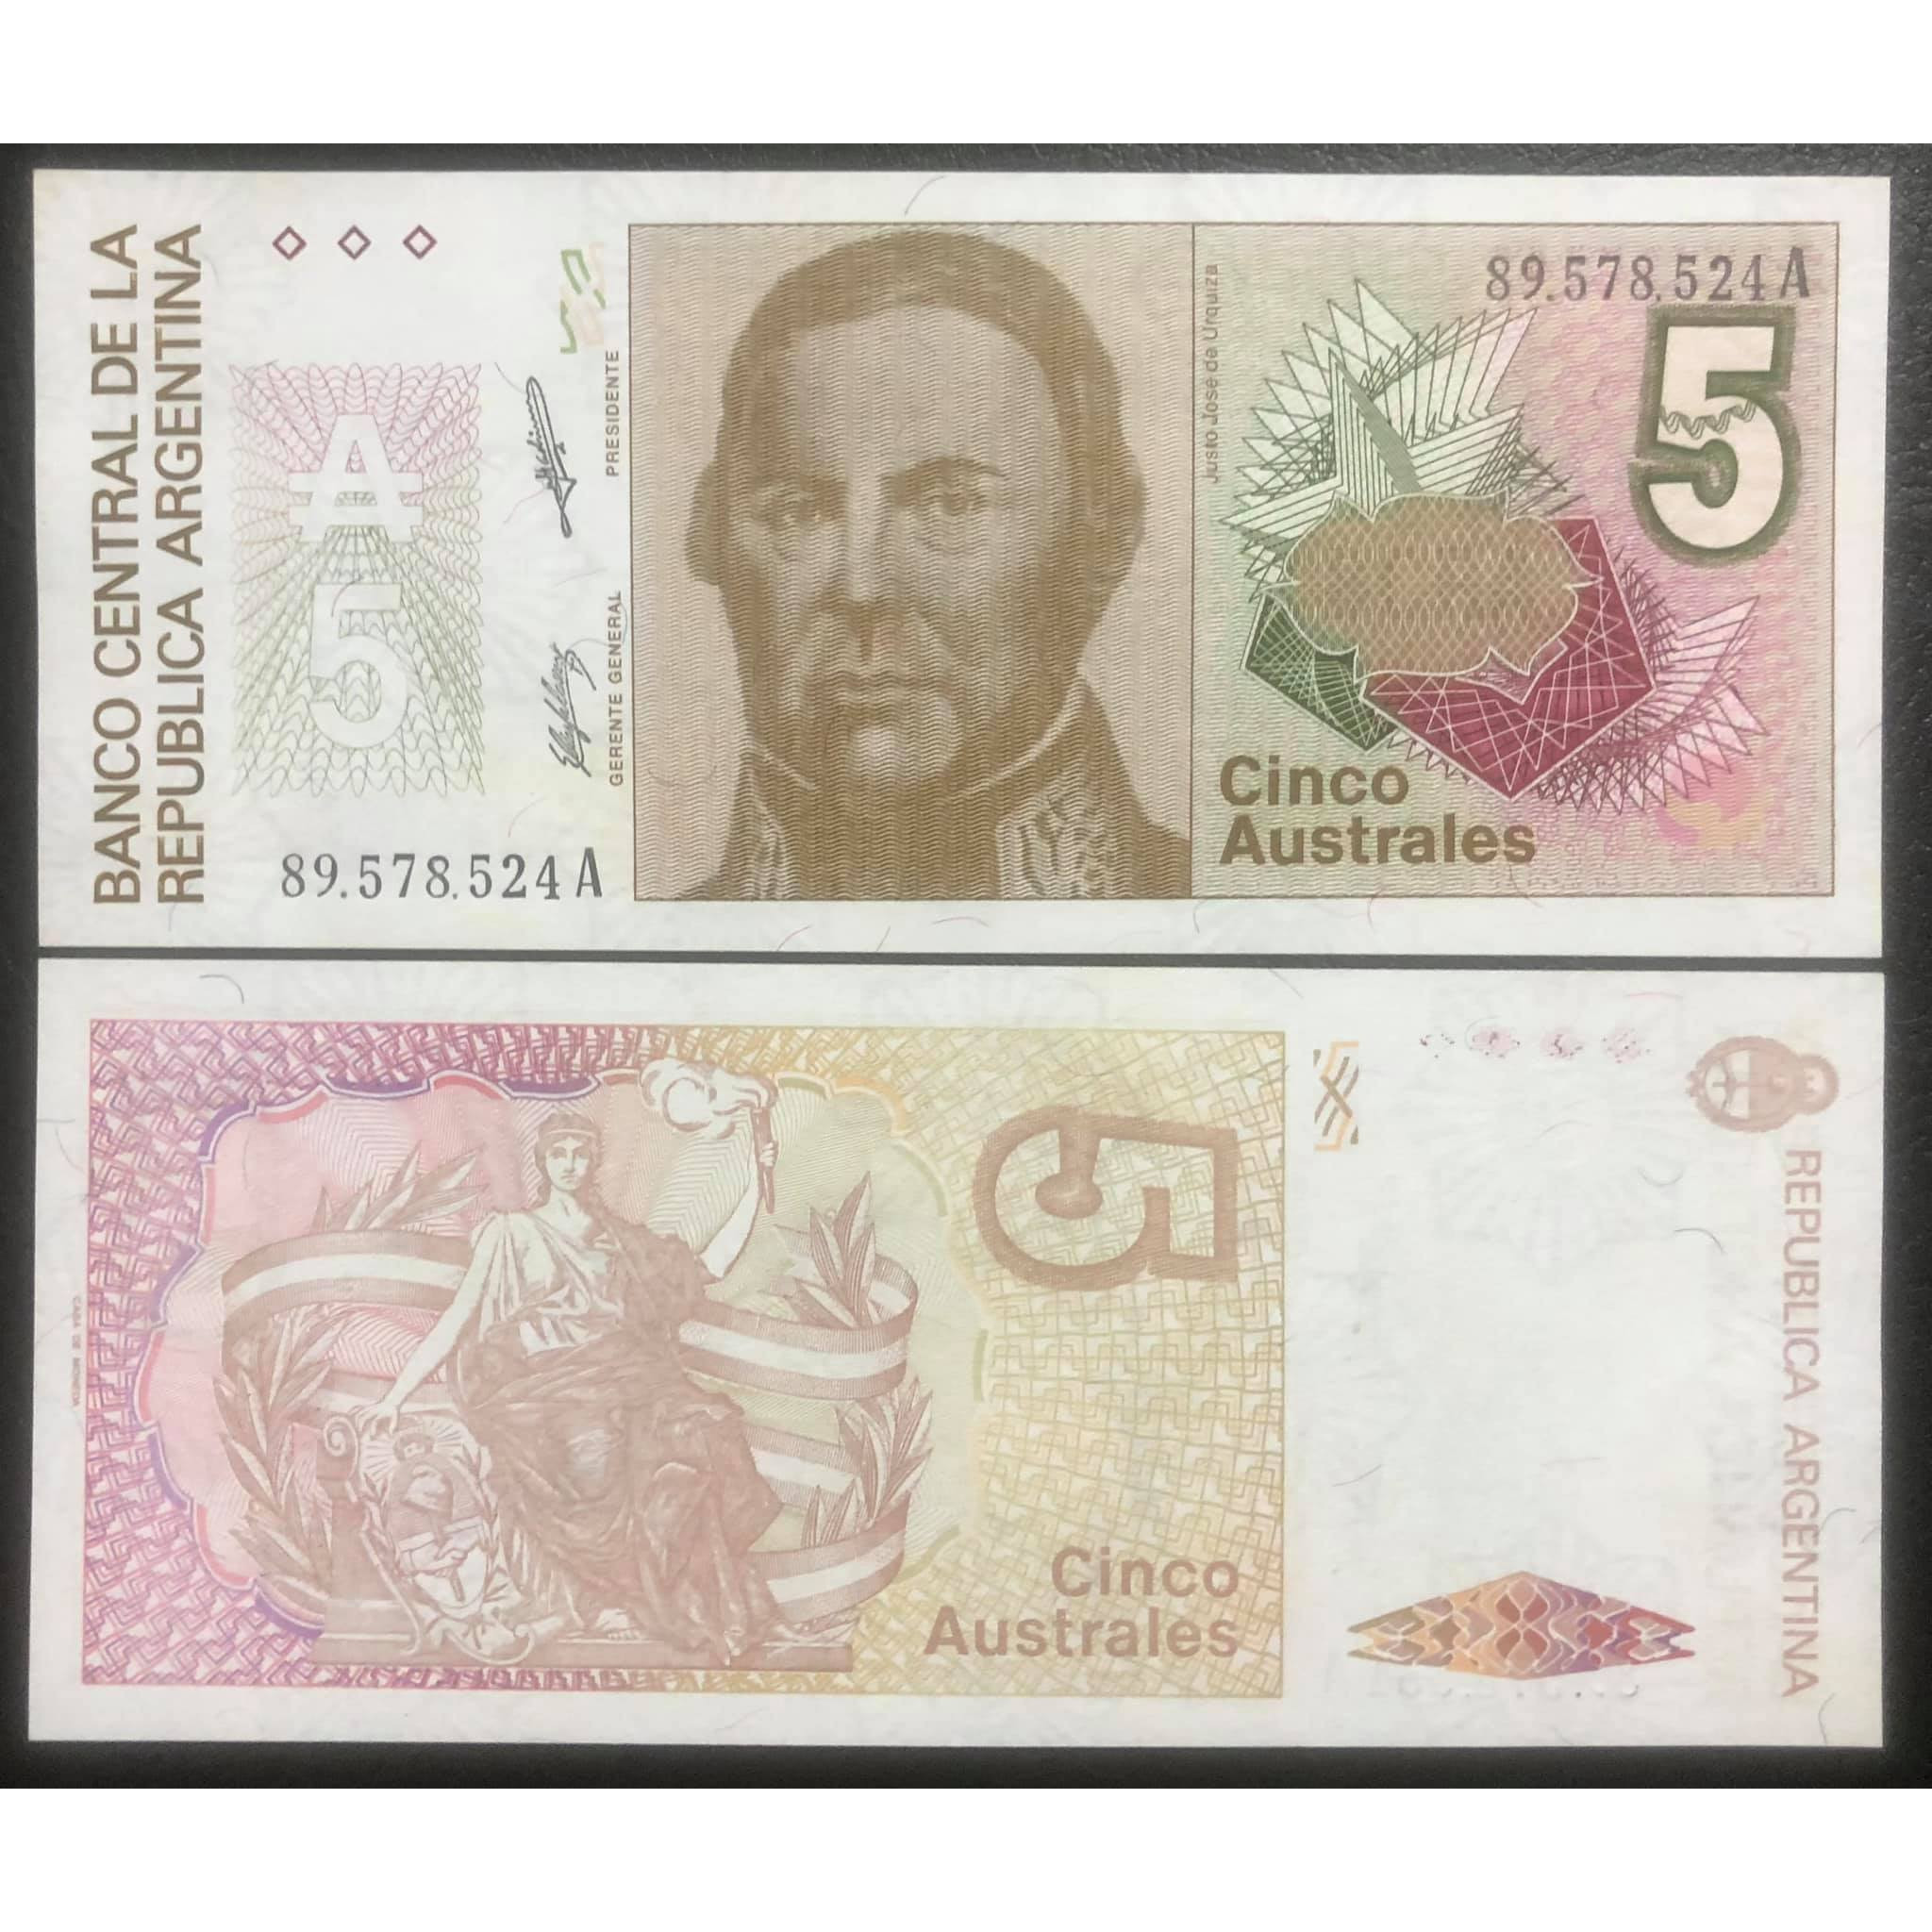 Tờ 5 australes Argentina, tiền của quốc gia Nam Mỹ sưu tầm